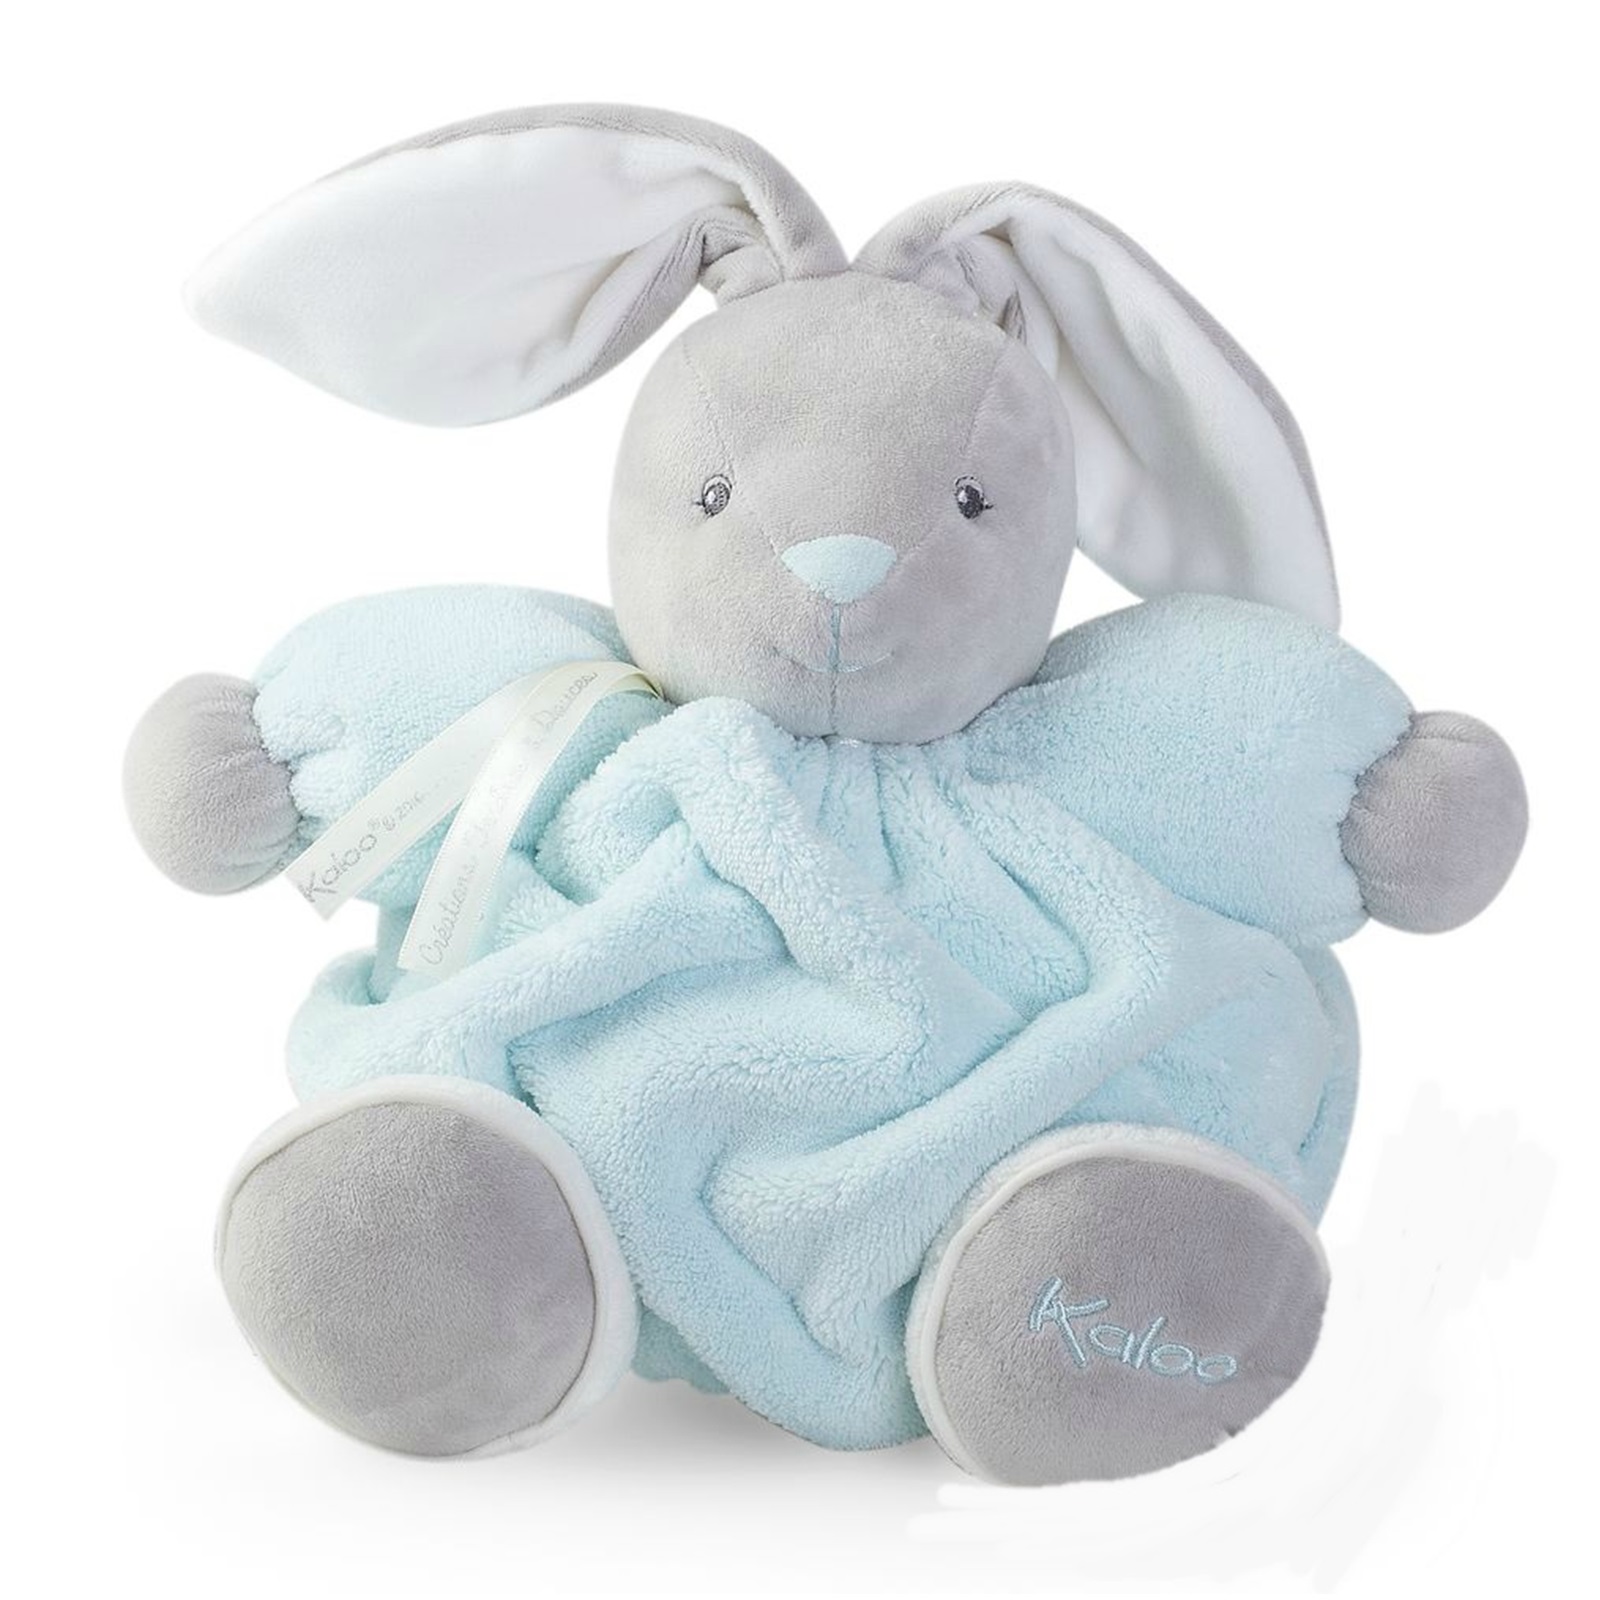 Мягкая игрушка из серии Плюм - зайчик средний синий, 25 см.  